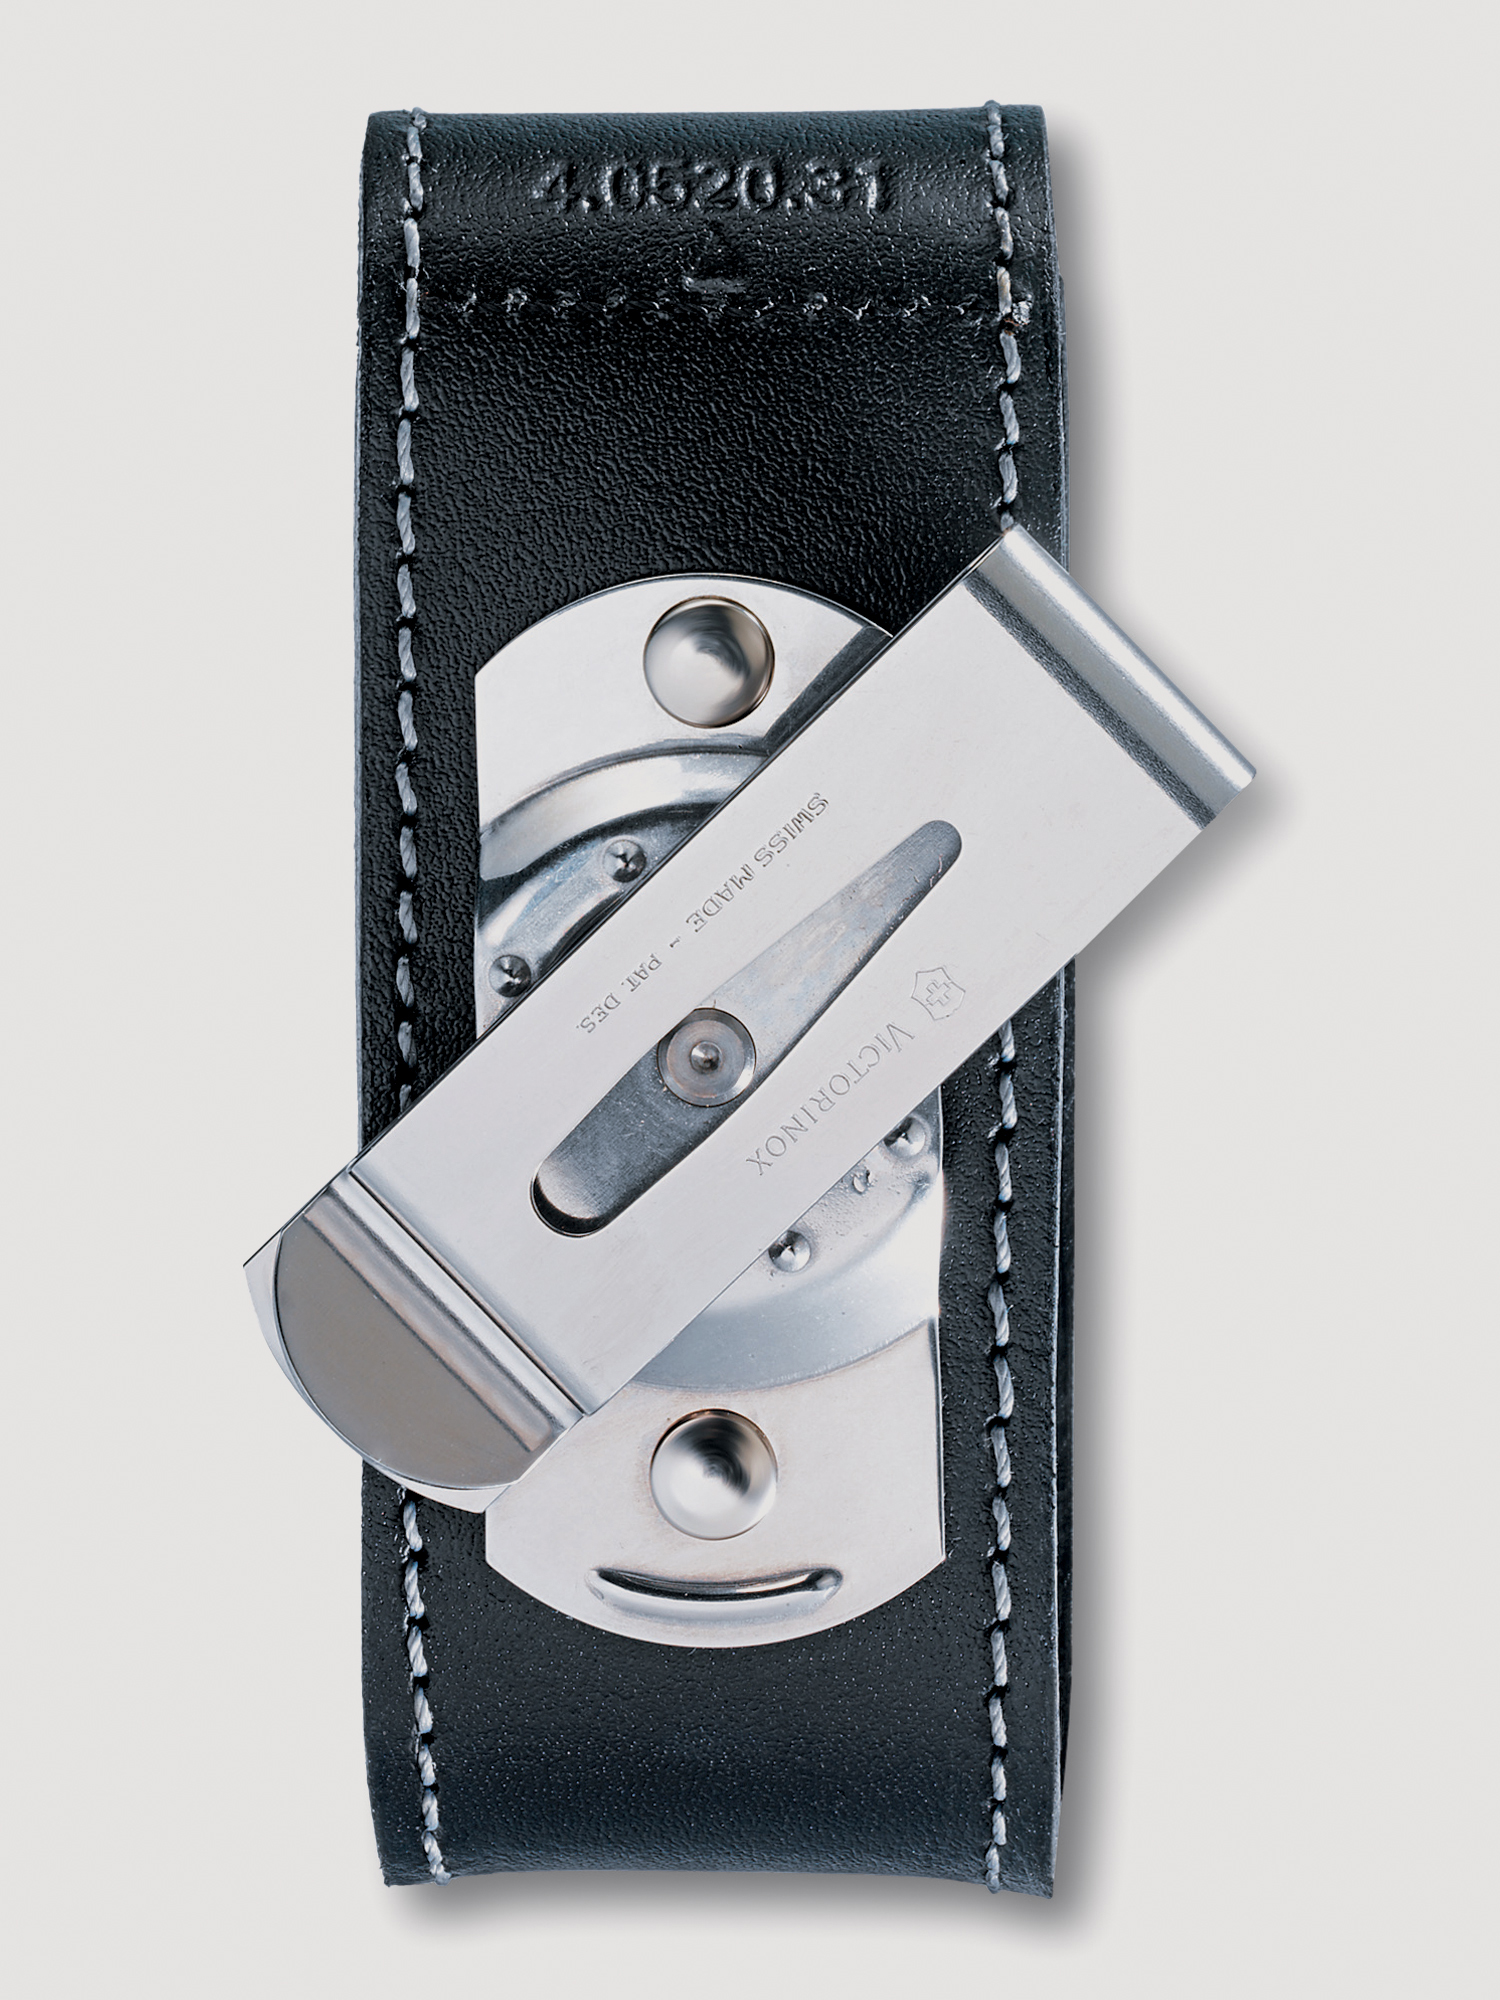 Чехол на ремень VICTORINOX для ножей 91мм толщиной 2-4 уровня, с поворотной клипсой, кожаный, чёрный, Черный чехол на ремень victorinox для ножей 111 мм толщиной 4 6 уровней кожаный коричневый коричневый